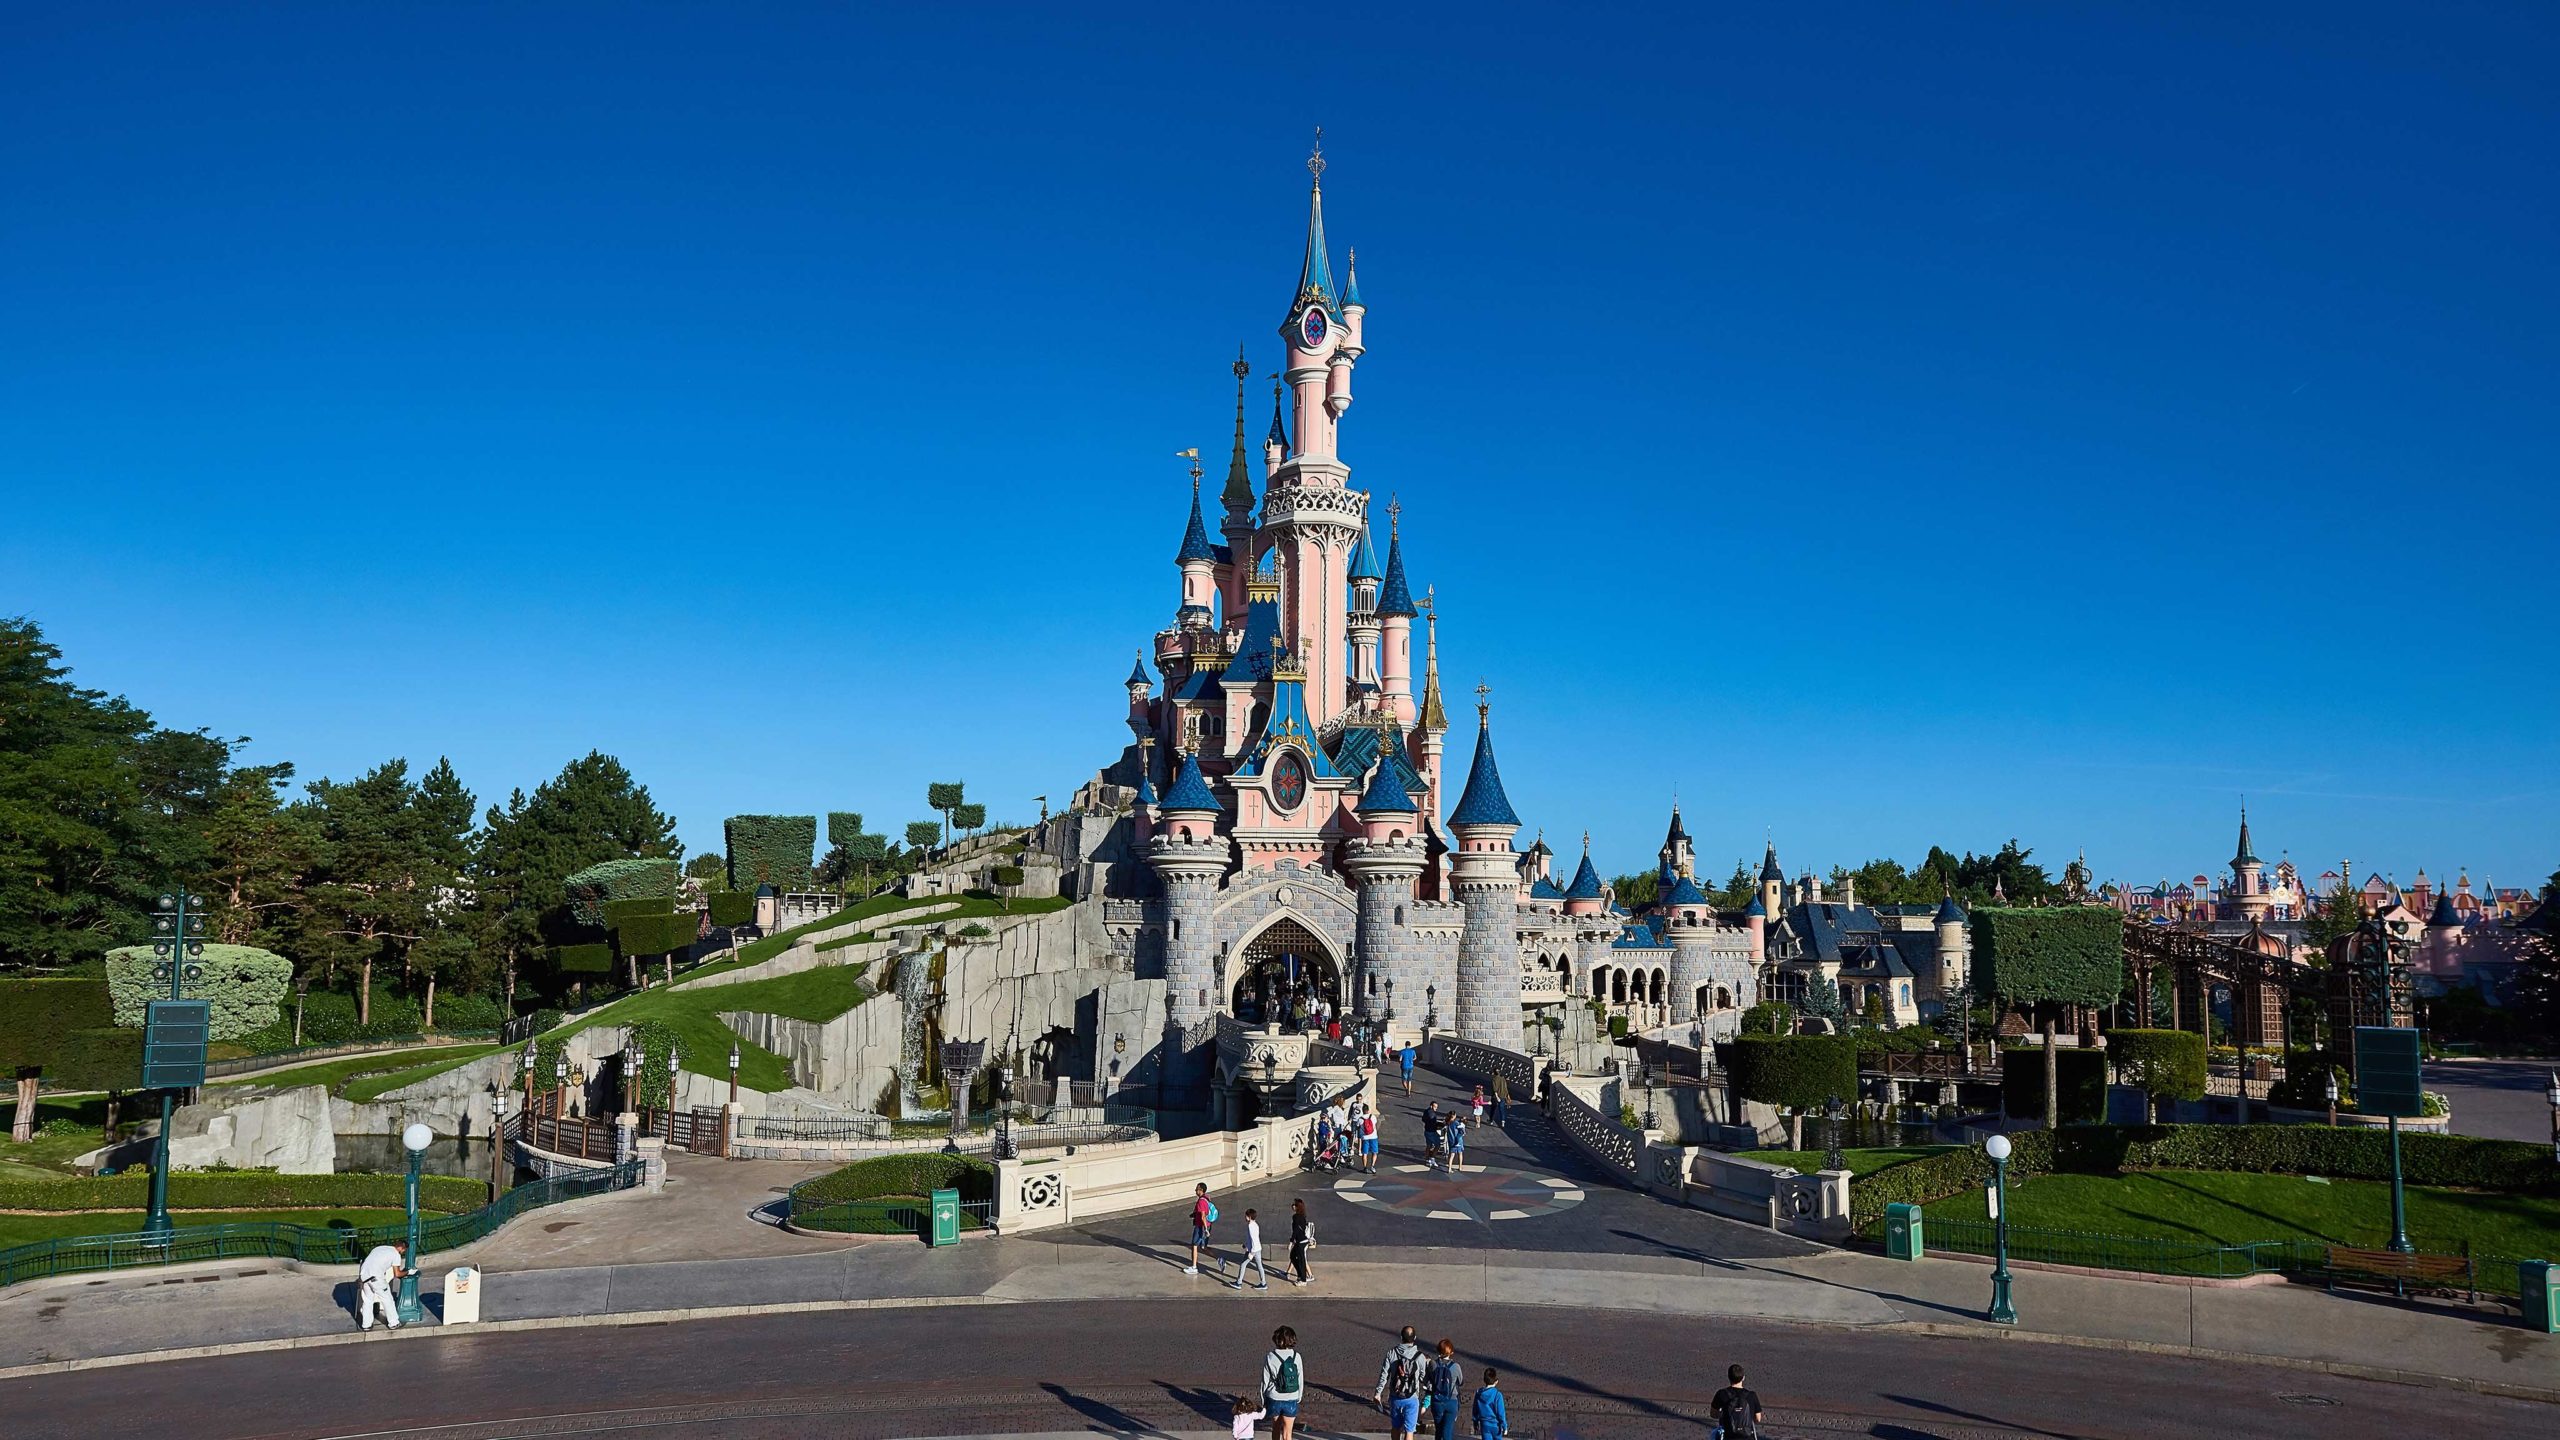 Il maestoso Castello della Bella Addormentata a Central Plaza a Disneyland Paris alla fine di Main Street